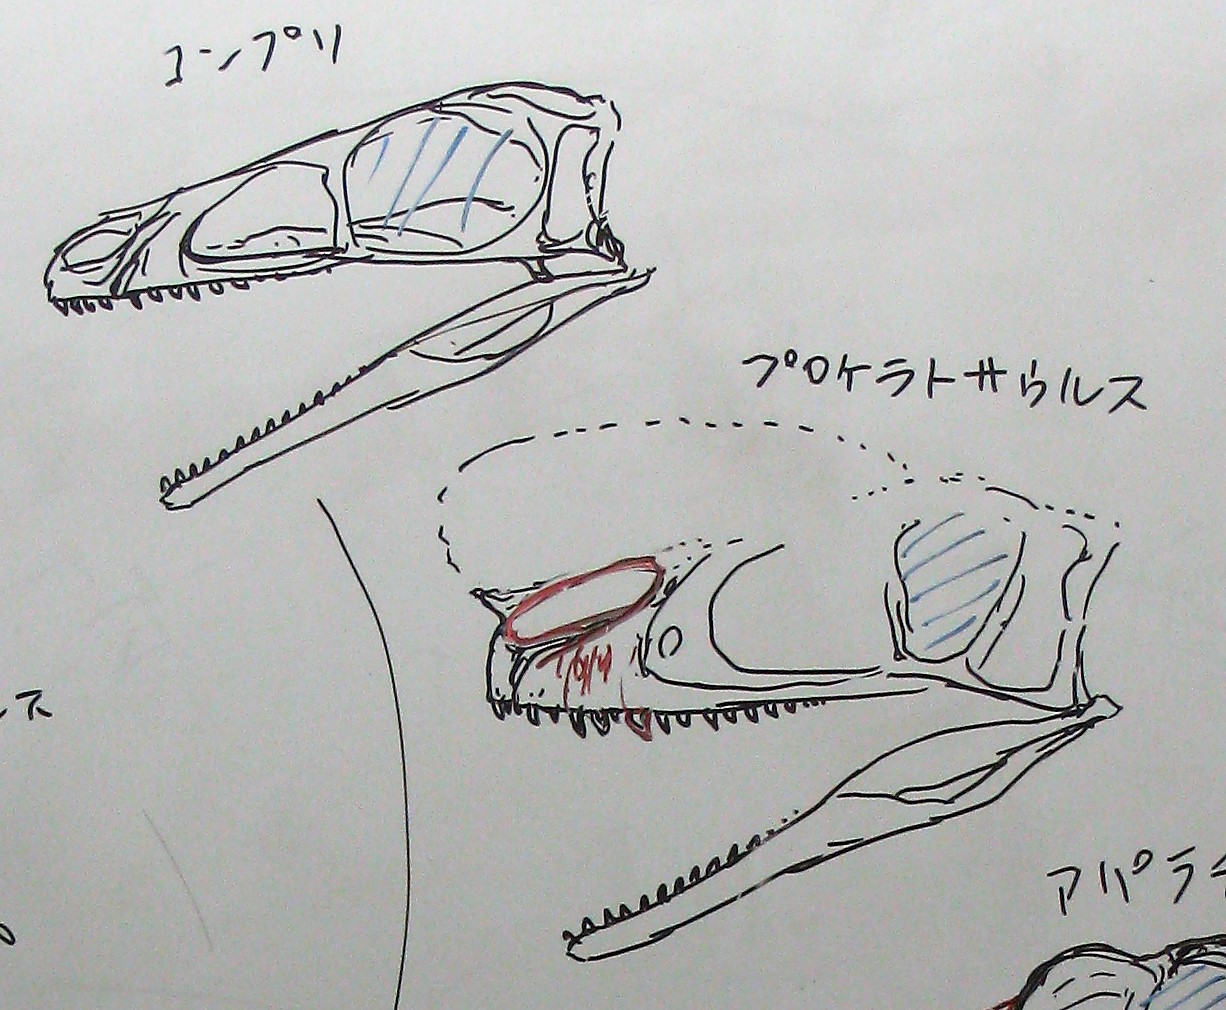 荒れクトロ ドリプトサウルス アパラチオサウルス段階で 大きな獲物を襲うタイプに急激に変化した ただしこの2属はその段階の生き残りで 進化はもっと前に起きていた ティラノサウルスがアパラチアに進出した場合 亜成体がドリプトとの競合に勝ち